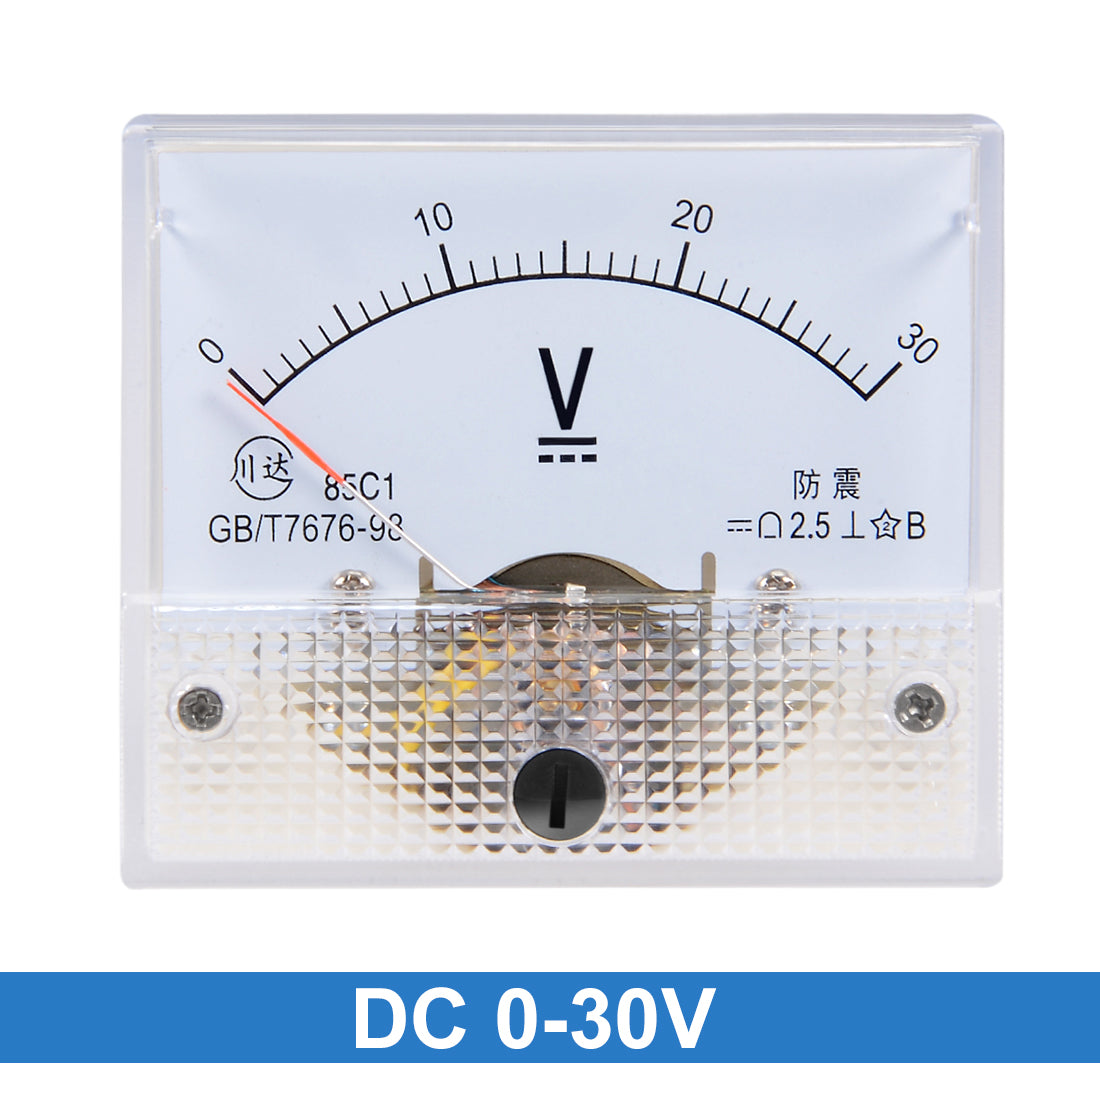 uxcell Uxcell DC 0-30V Analog Panel Voltage Gauge Volt Meter 85C1 2.5% Error Margin